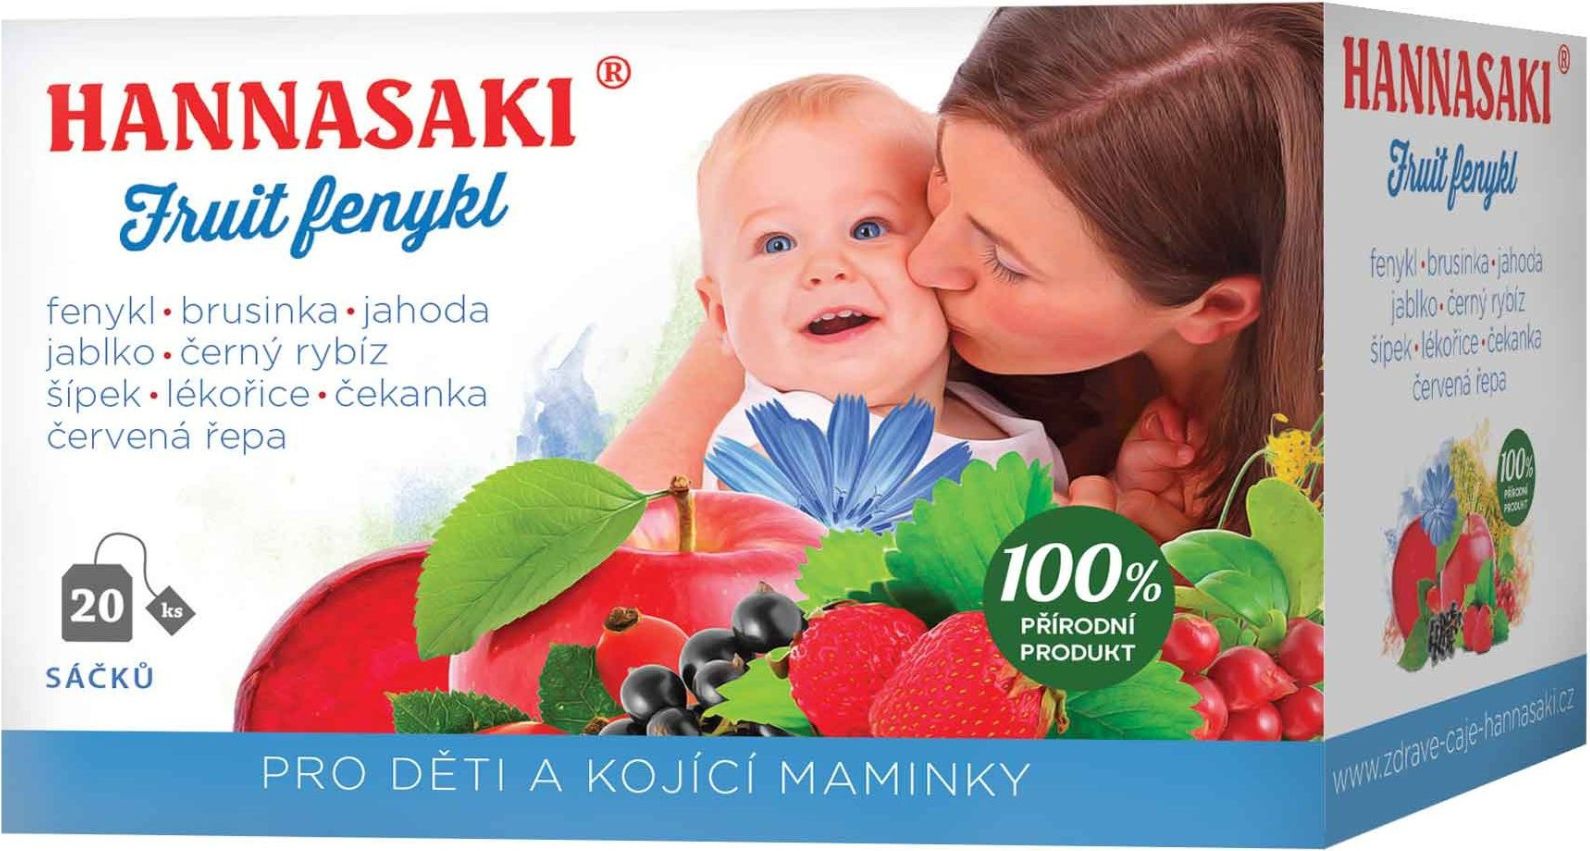 Hannasaki Fruit Fenykl pro děti a kojící maminky 20 sáčků - obrázek 1